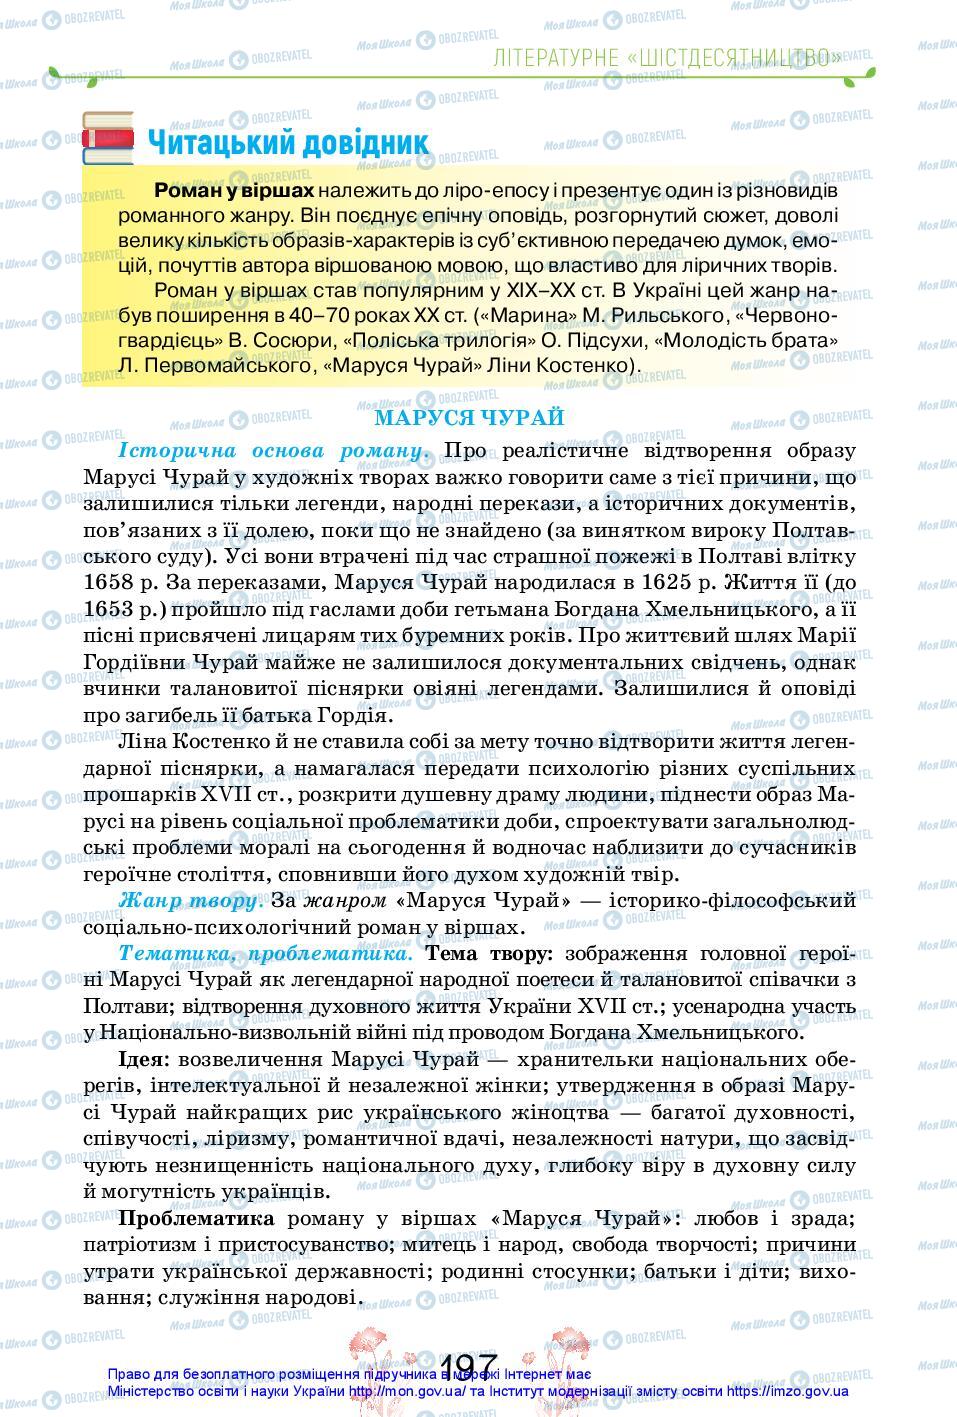 Учебники Укр лит 11 класс страница 197